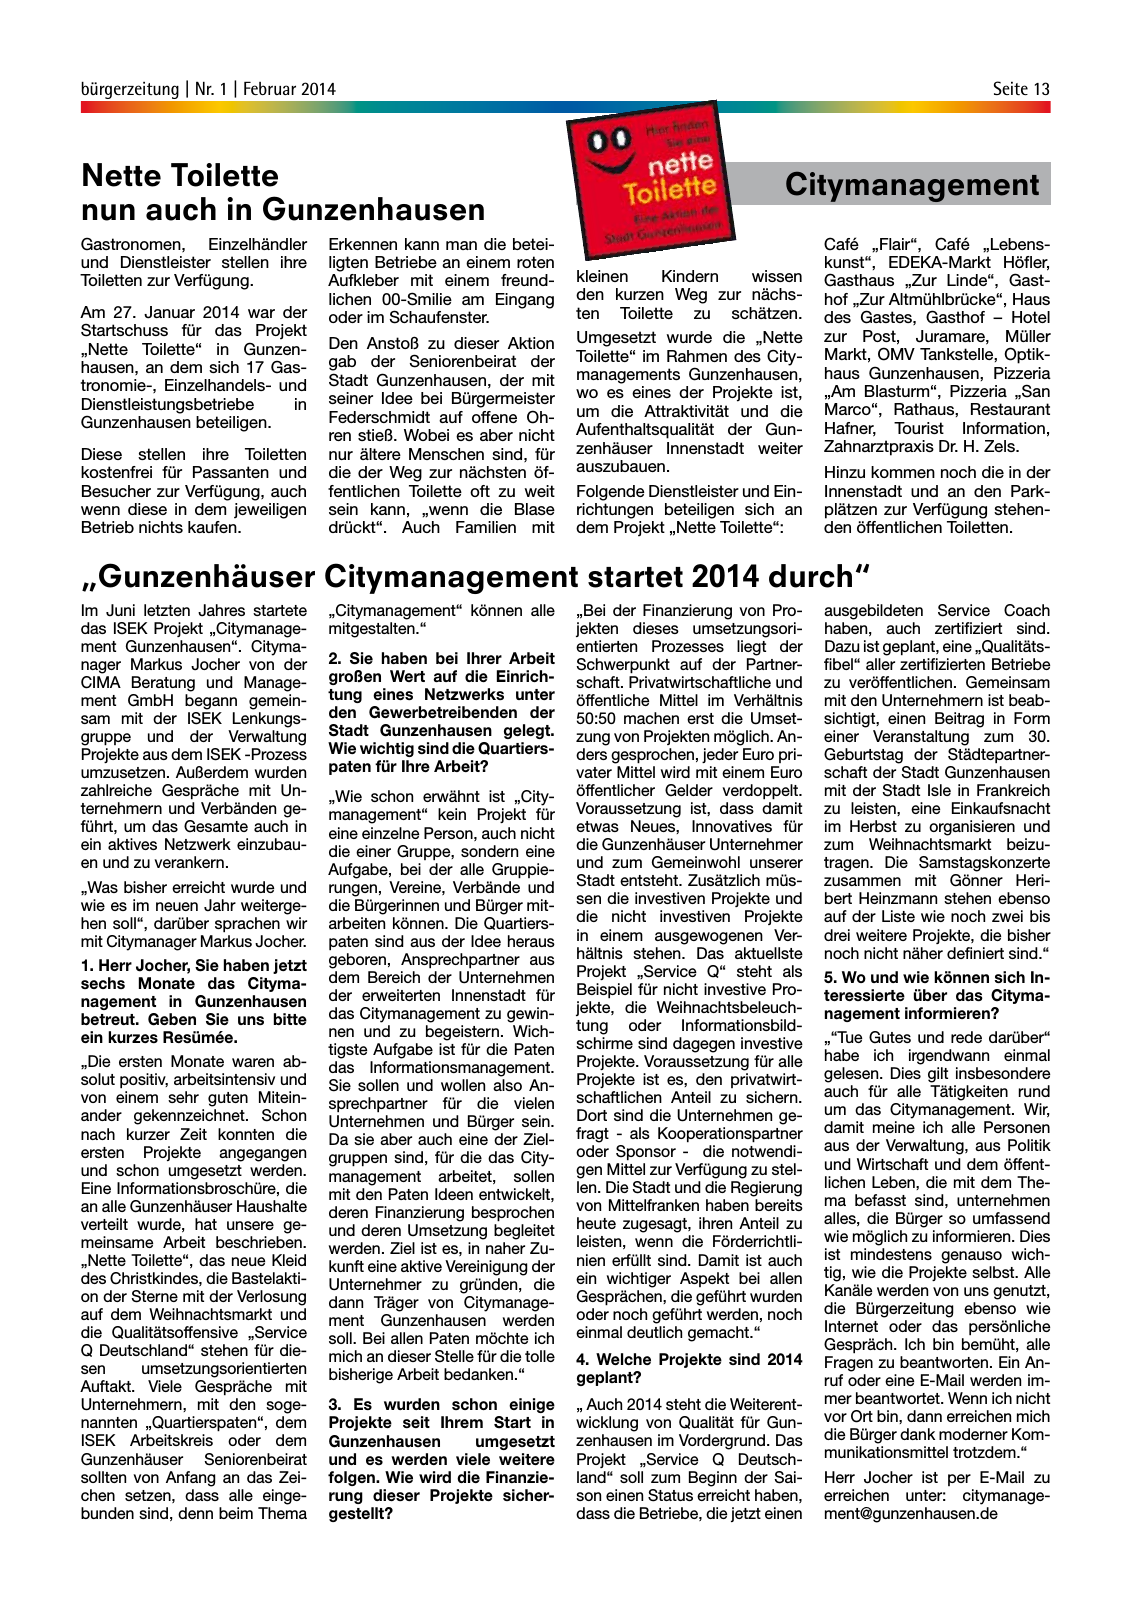 Vorschau StadtLandGUN - Gunzenhäuser Bürgerzeitung Seite 13